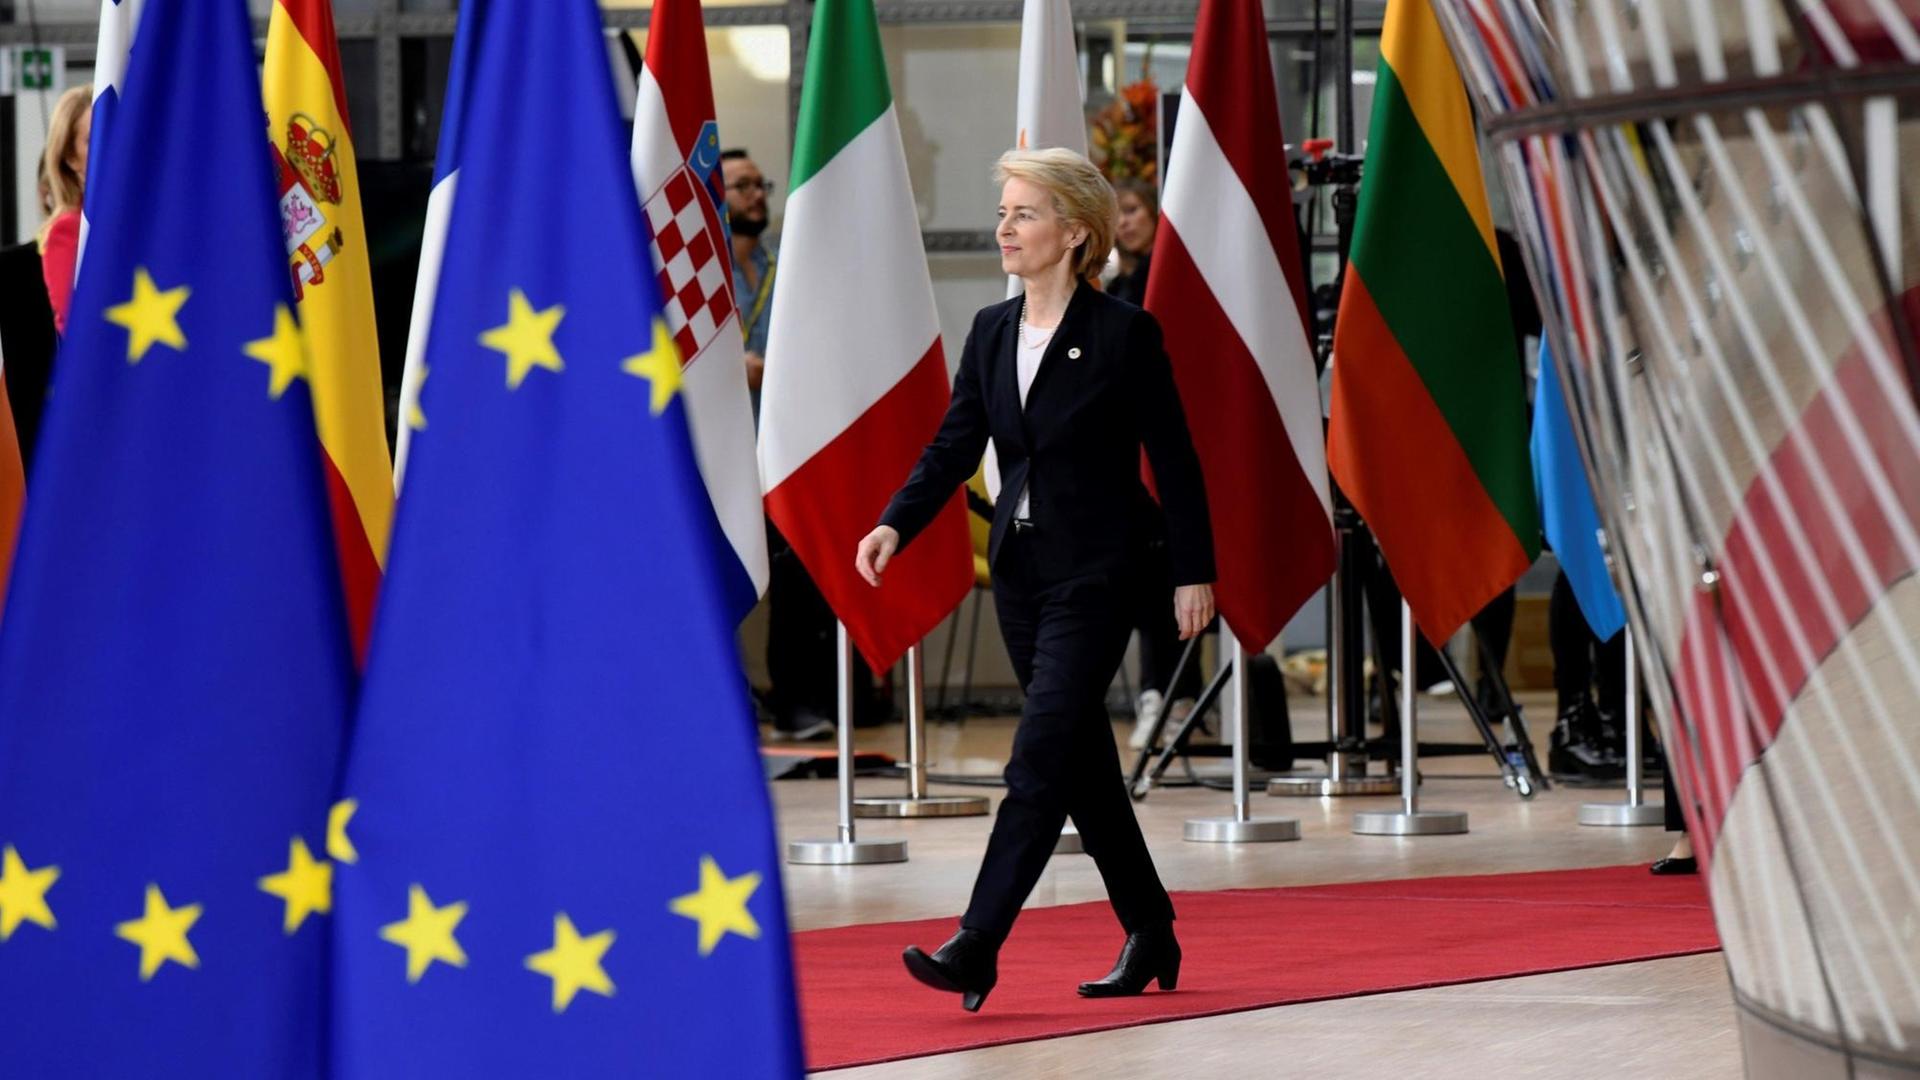 Die CDU-Politikerin Ursula von der Leyen läuft an zahlreichen Flaggen im EU-Hauptquartier in Brüssel entlang.